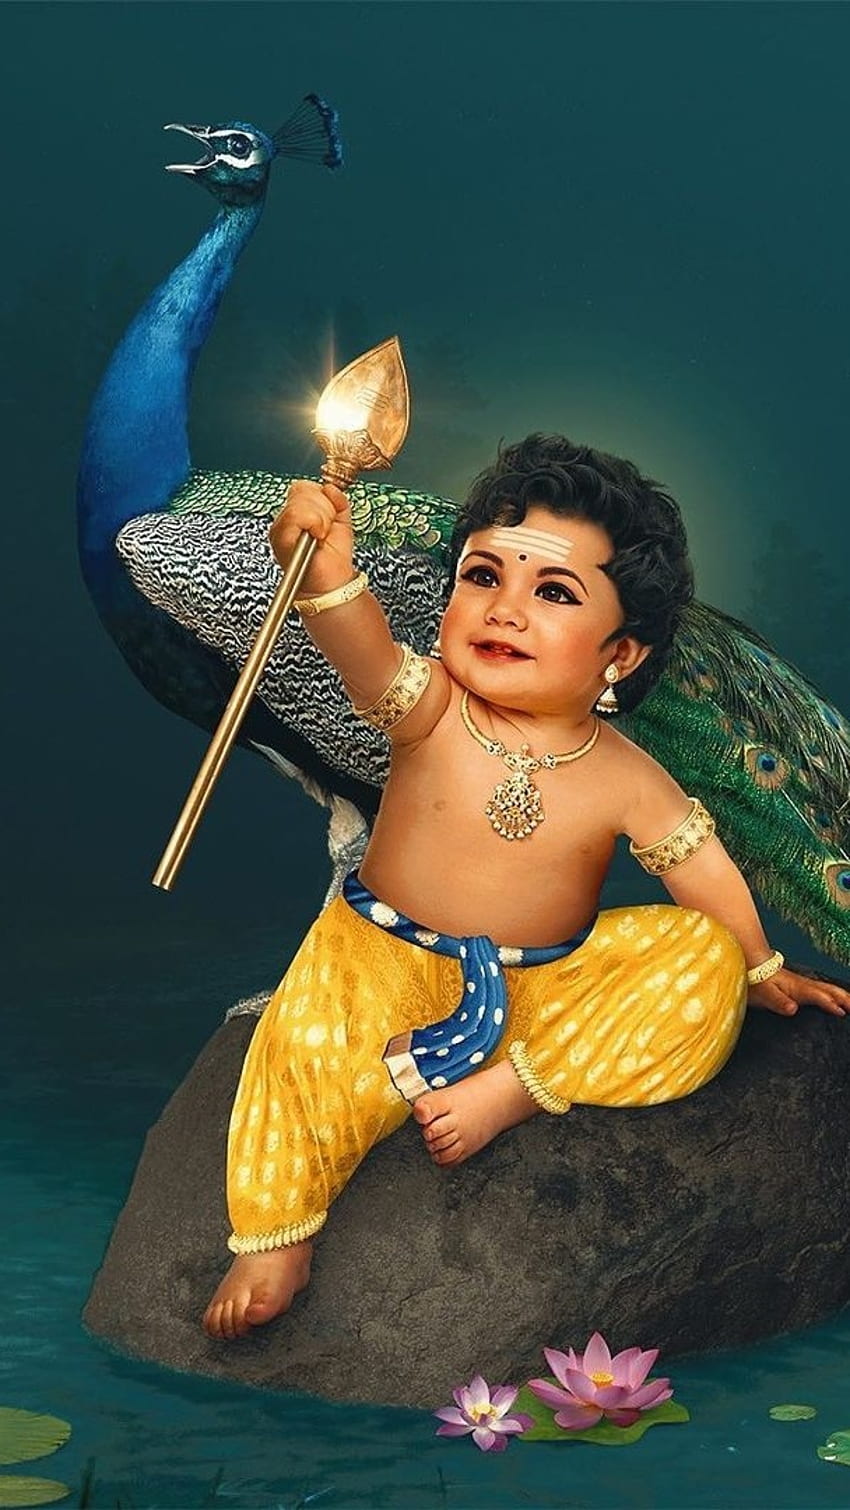 Little Lord Murugan With Peacock Editing in hop. Lord Murugan ...